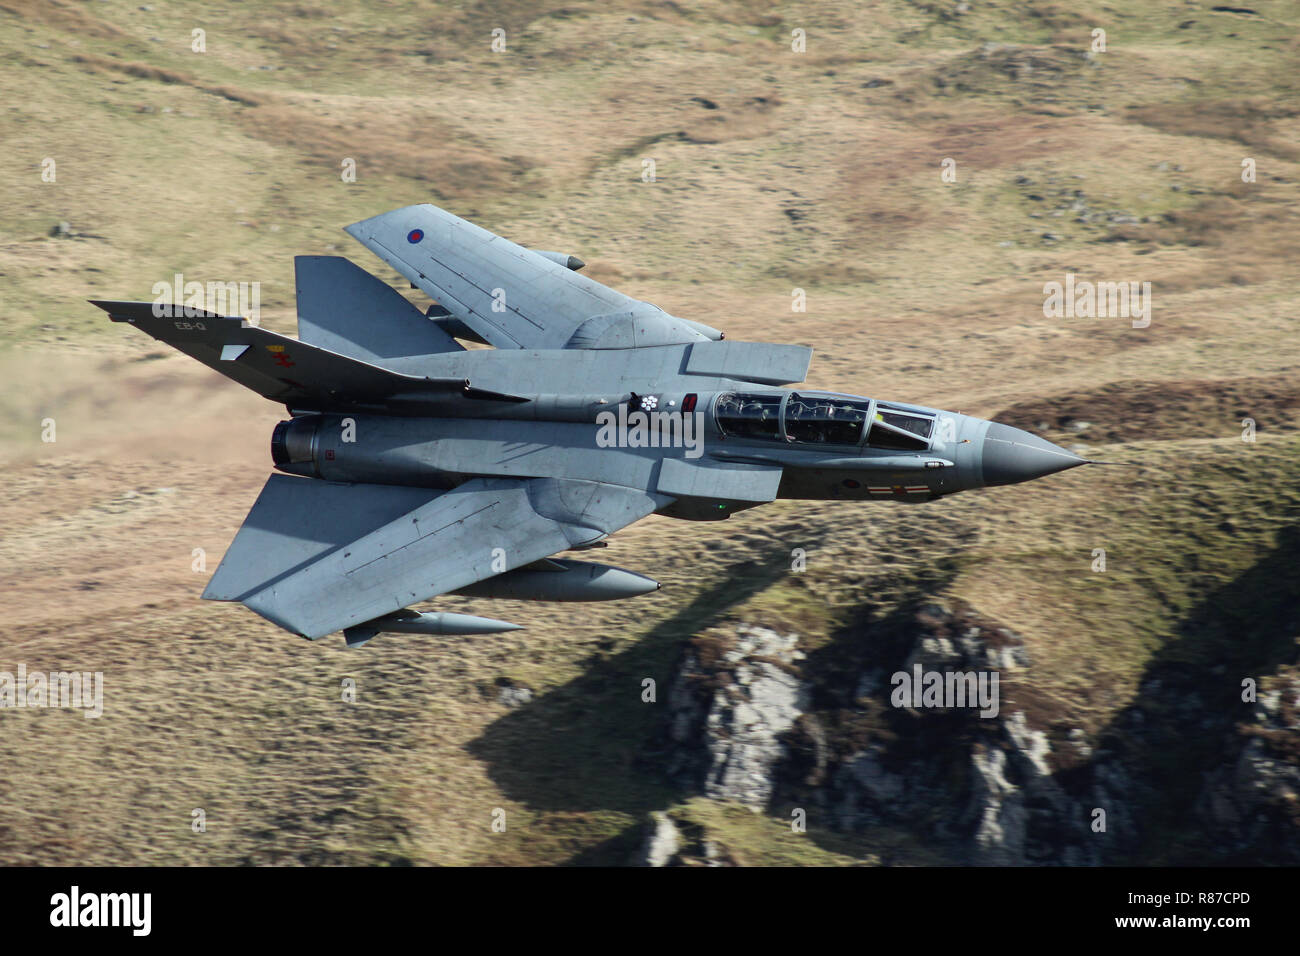 RAF Tornado GR4, de l'escadron 41, sur un vol d'entraînement à basse altitude dans la région de boucle mach Gwynedd, Pays de Galles, Royaume-Uni. Banque D'Images